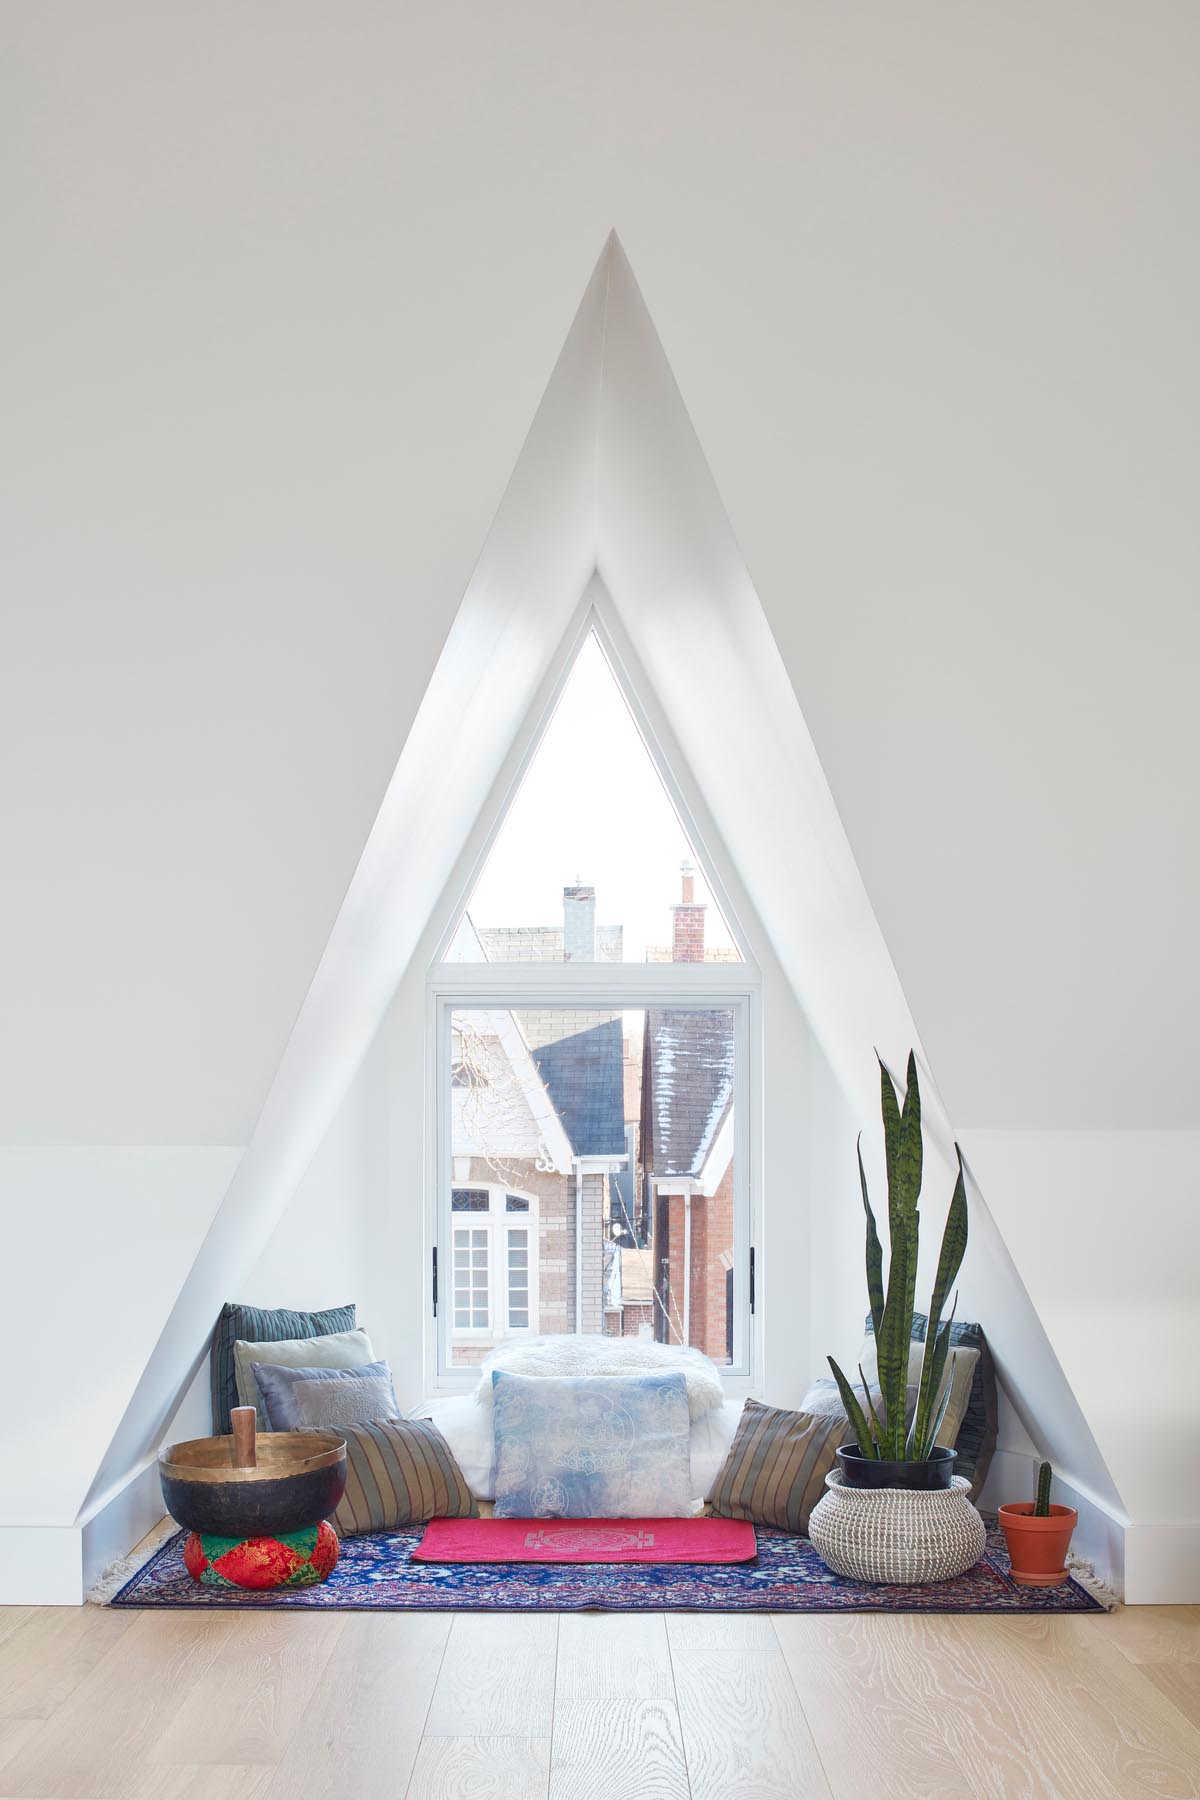 Уголок у окна треугольной формы, обставленный ковриком, множеством подушек, растений и чашей для медитации.